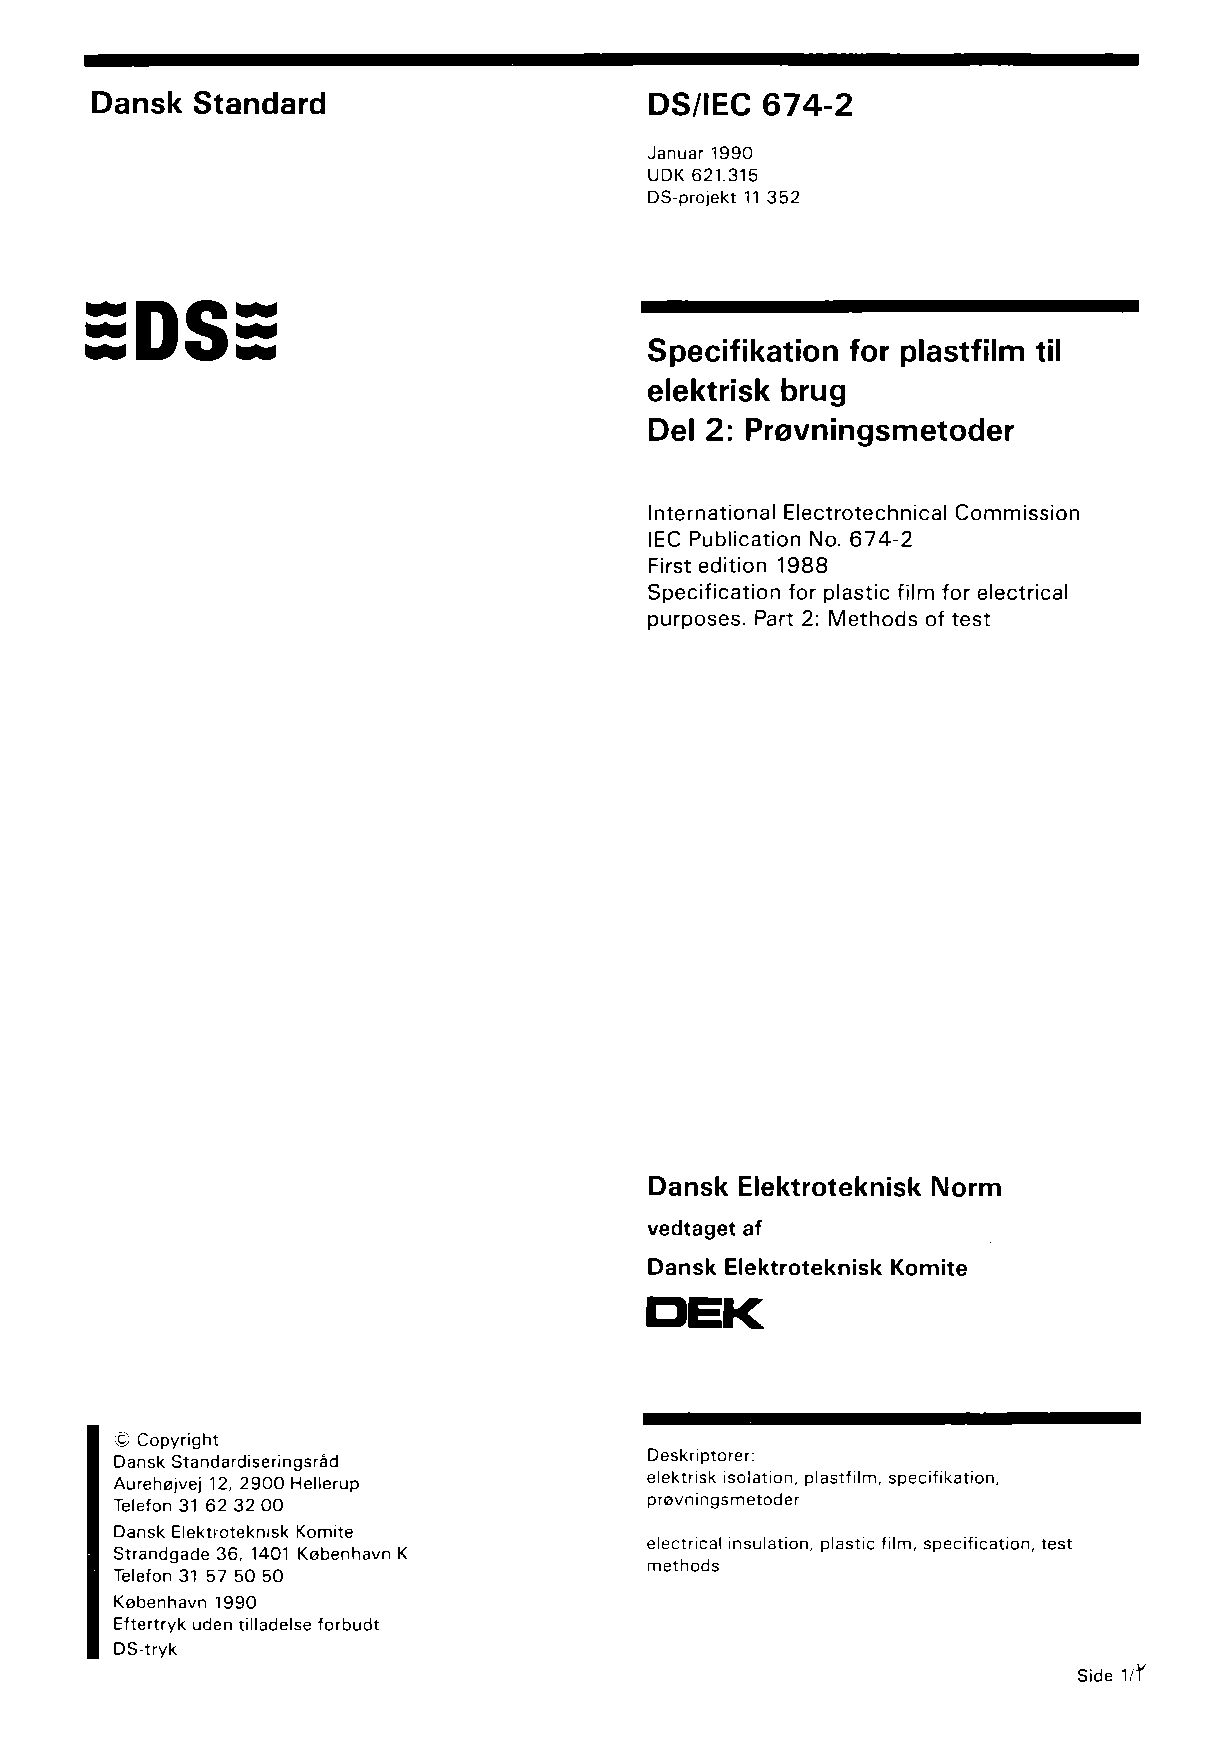 DS/IEC 674-2:1990